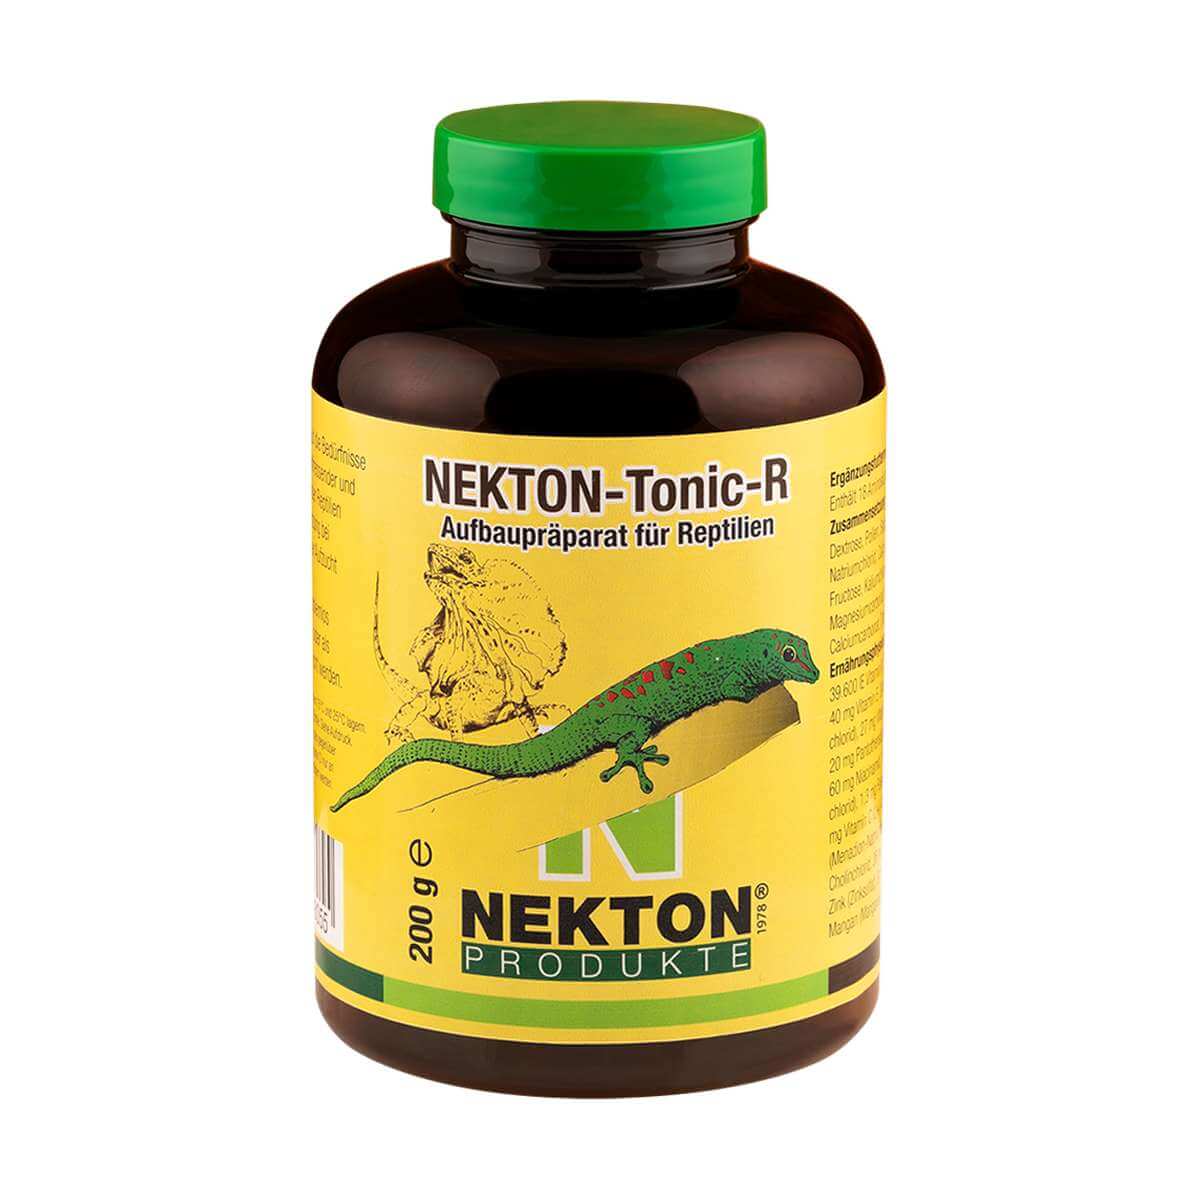 Развивающий состав для рептилий Nekton-Tonic-R, 200 г